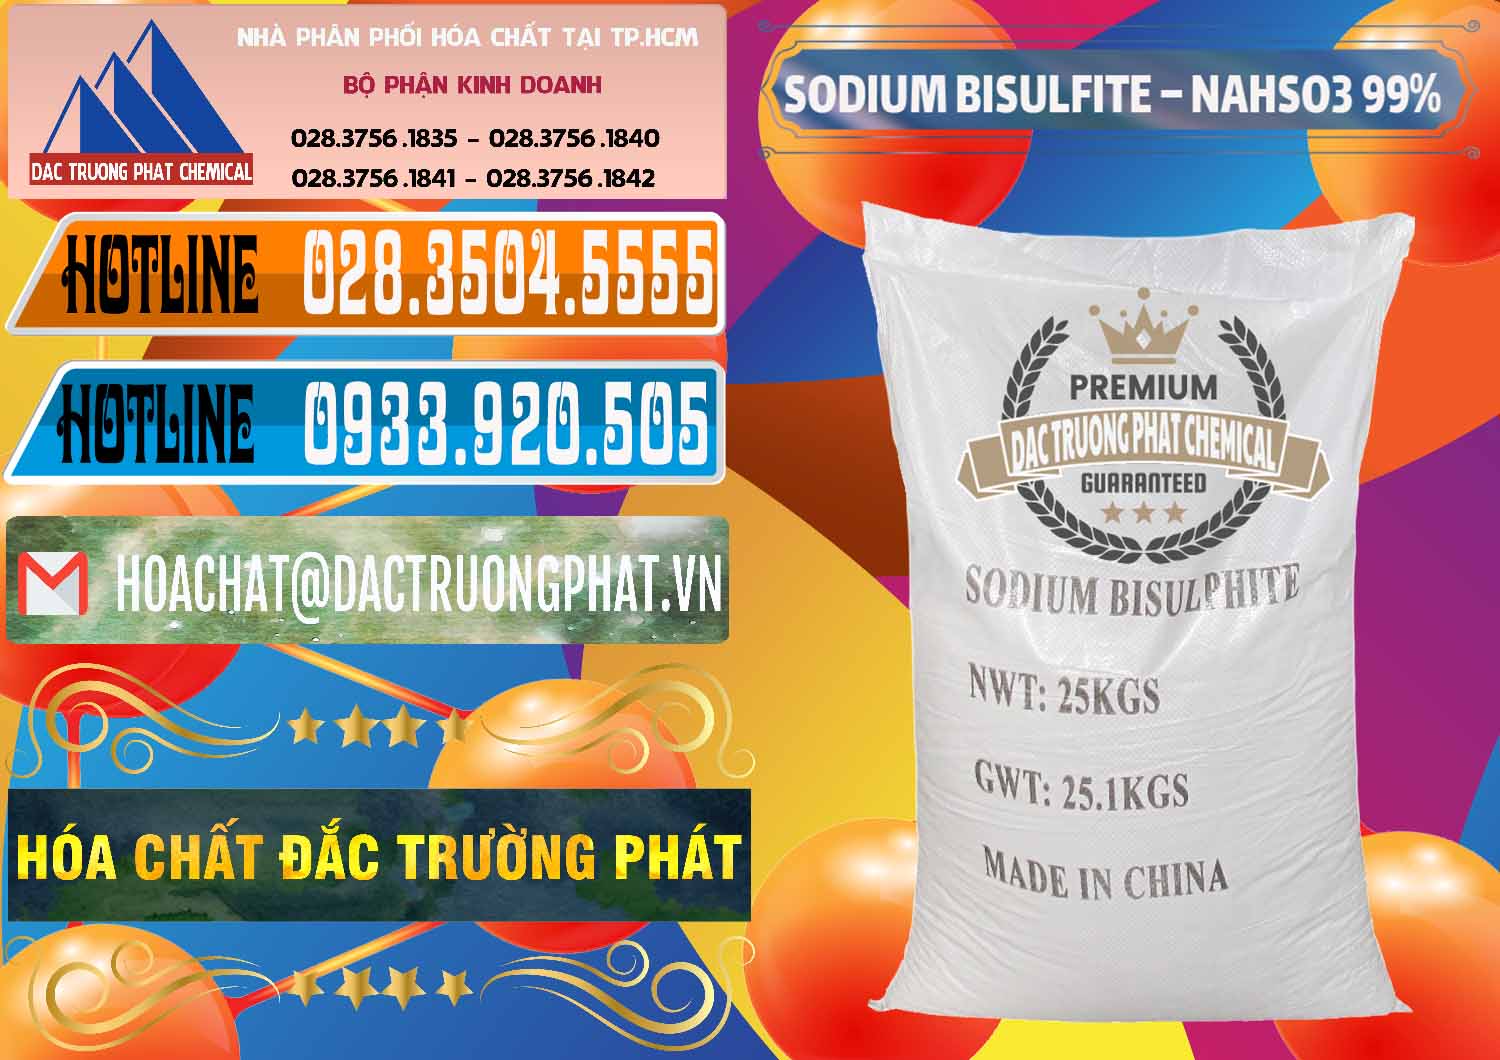 Công ty cung cấp và bán Sodium Bisulfite – NAHSO3 Trung Quốc China - 0140 - Chuyên phân phối & cung cấp hóa chất tại TP.HCM - stmp.net